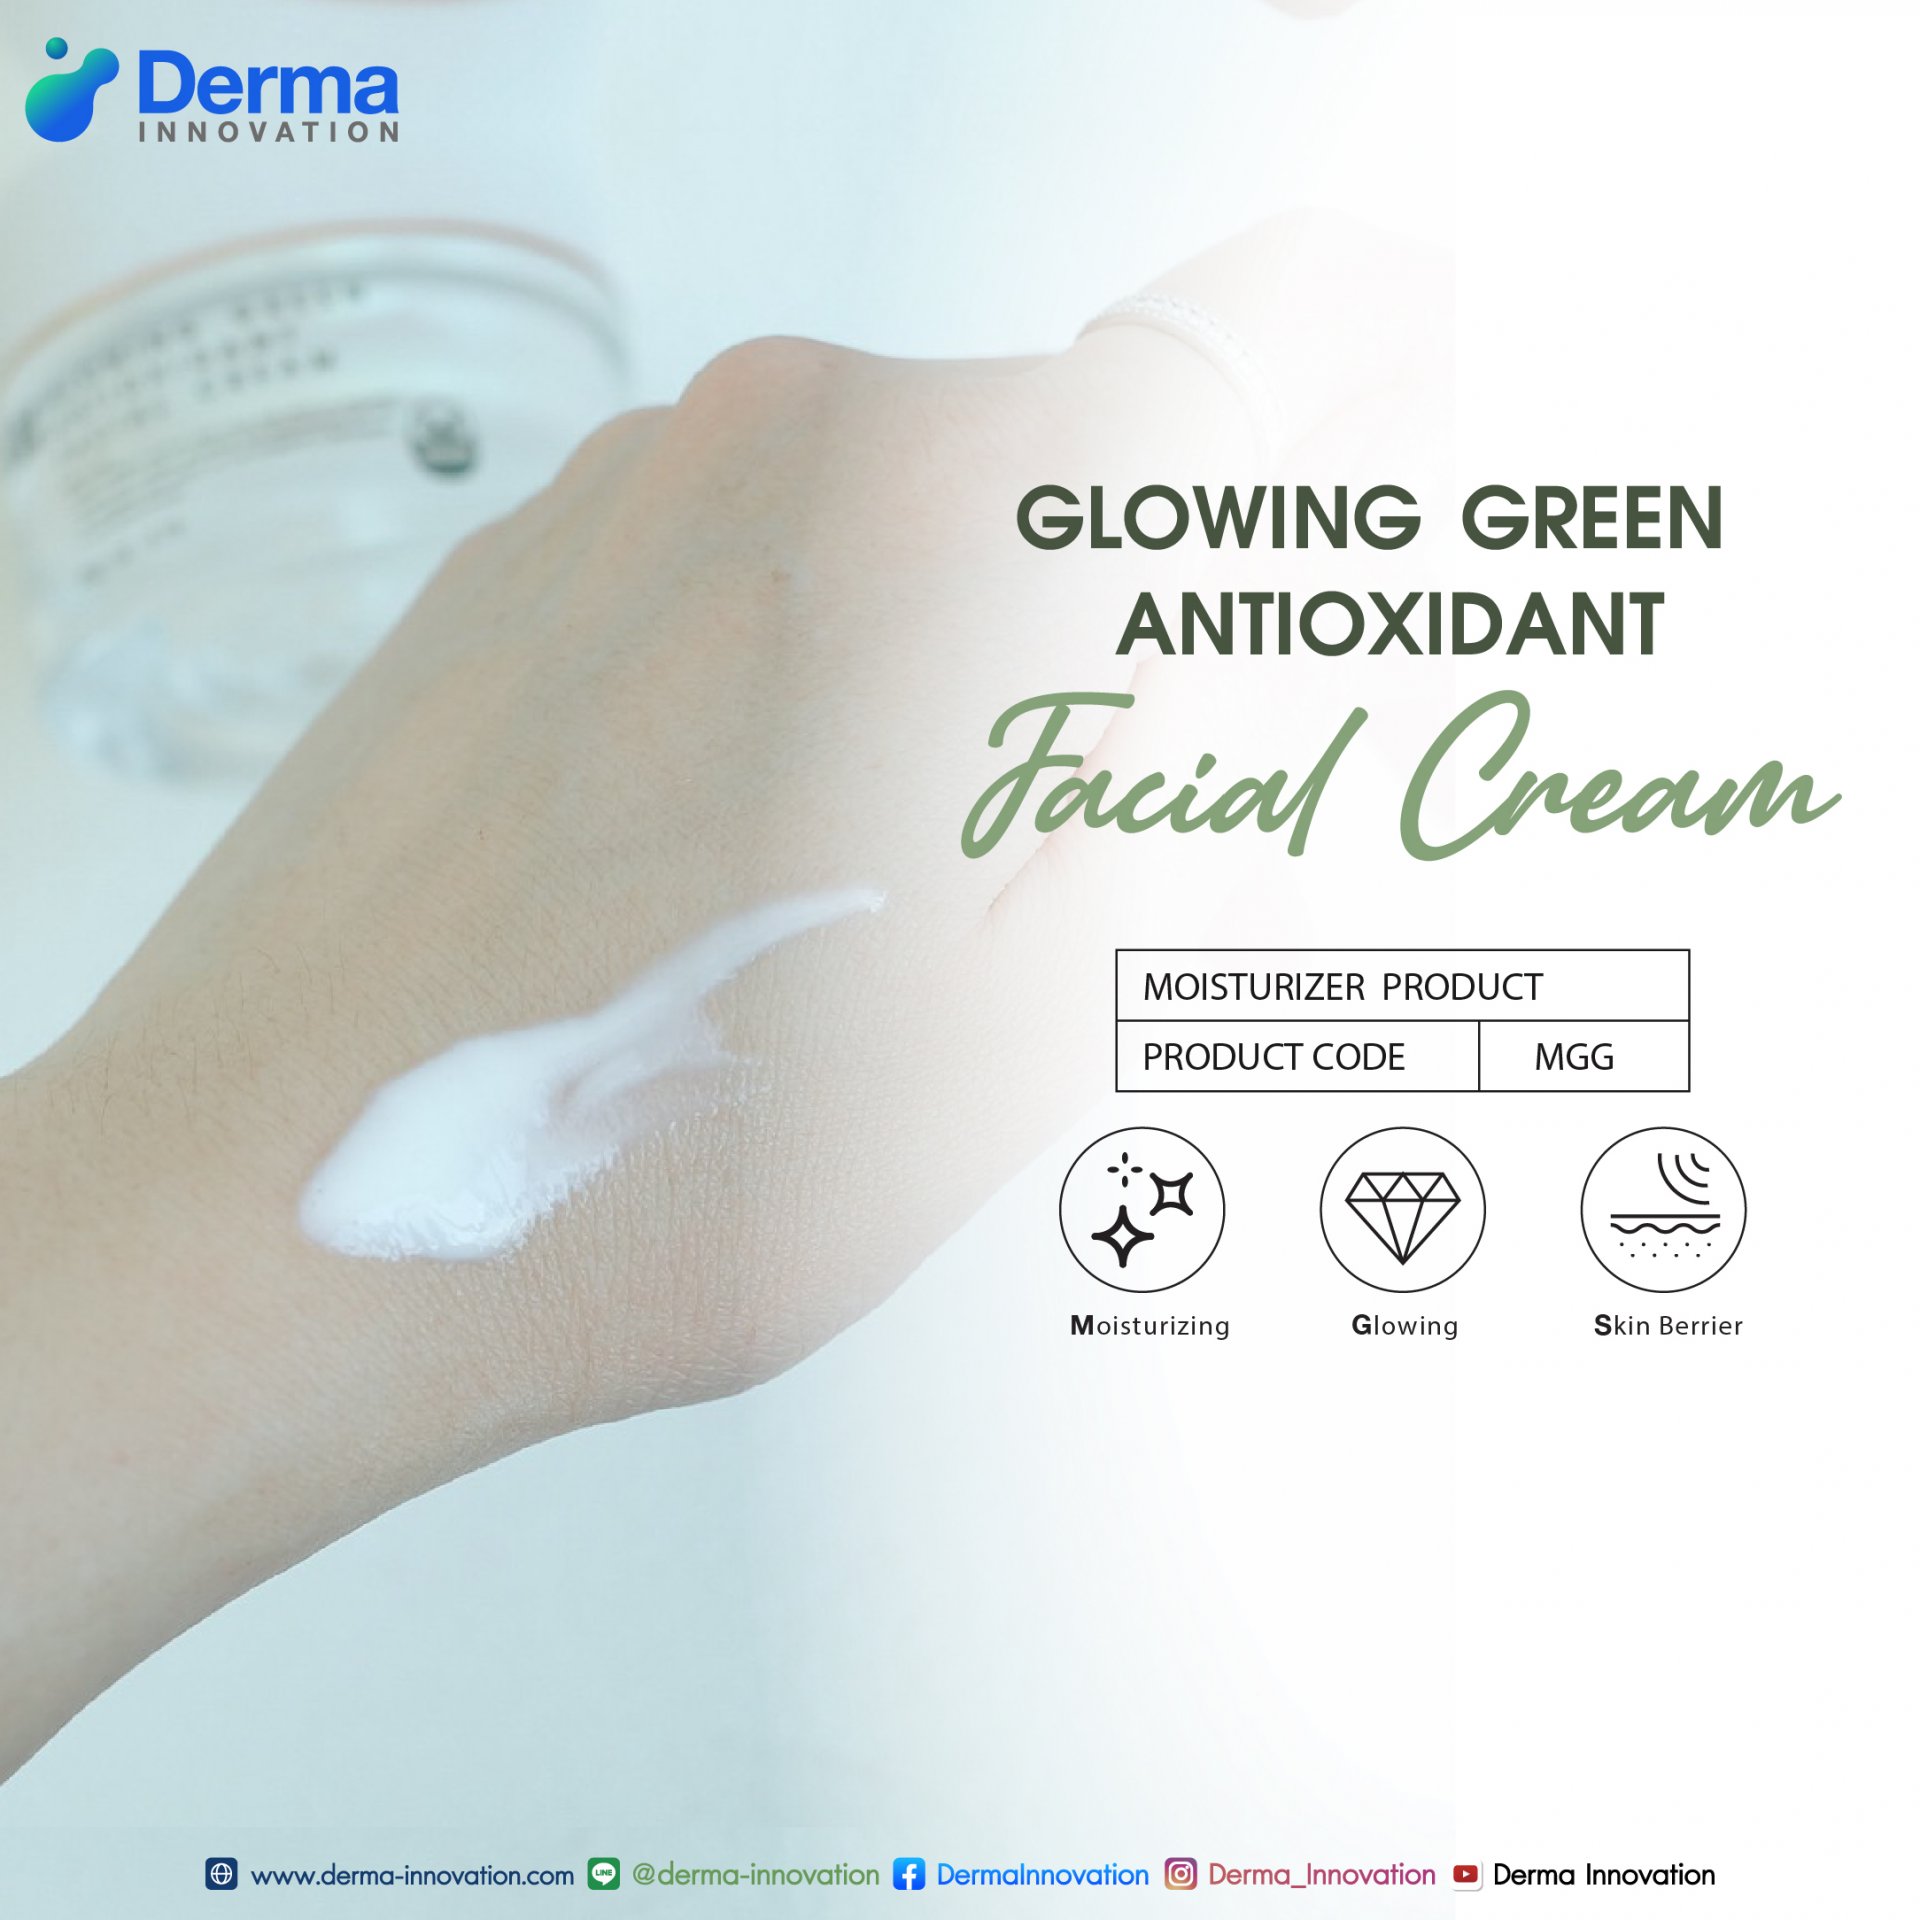 Glowing Green Antioxidant Facial Cream